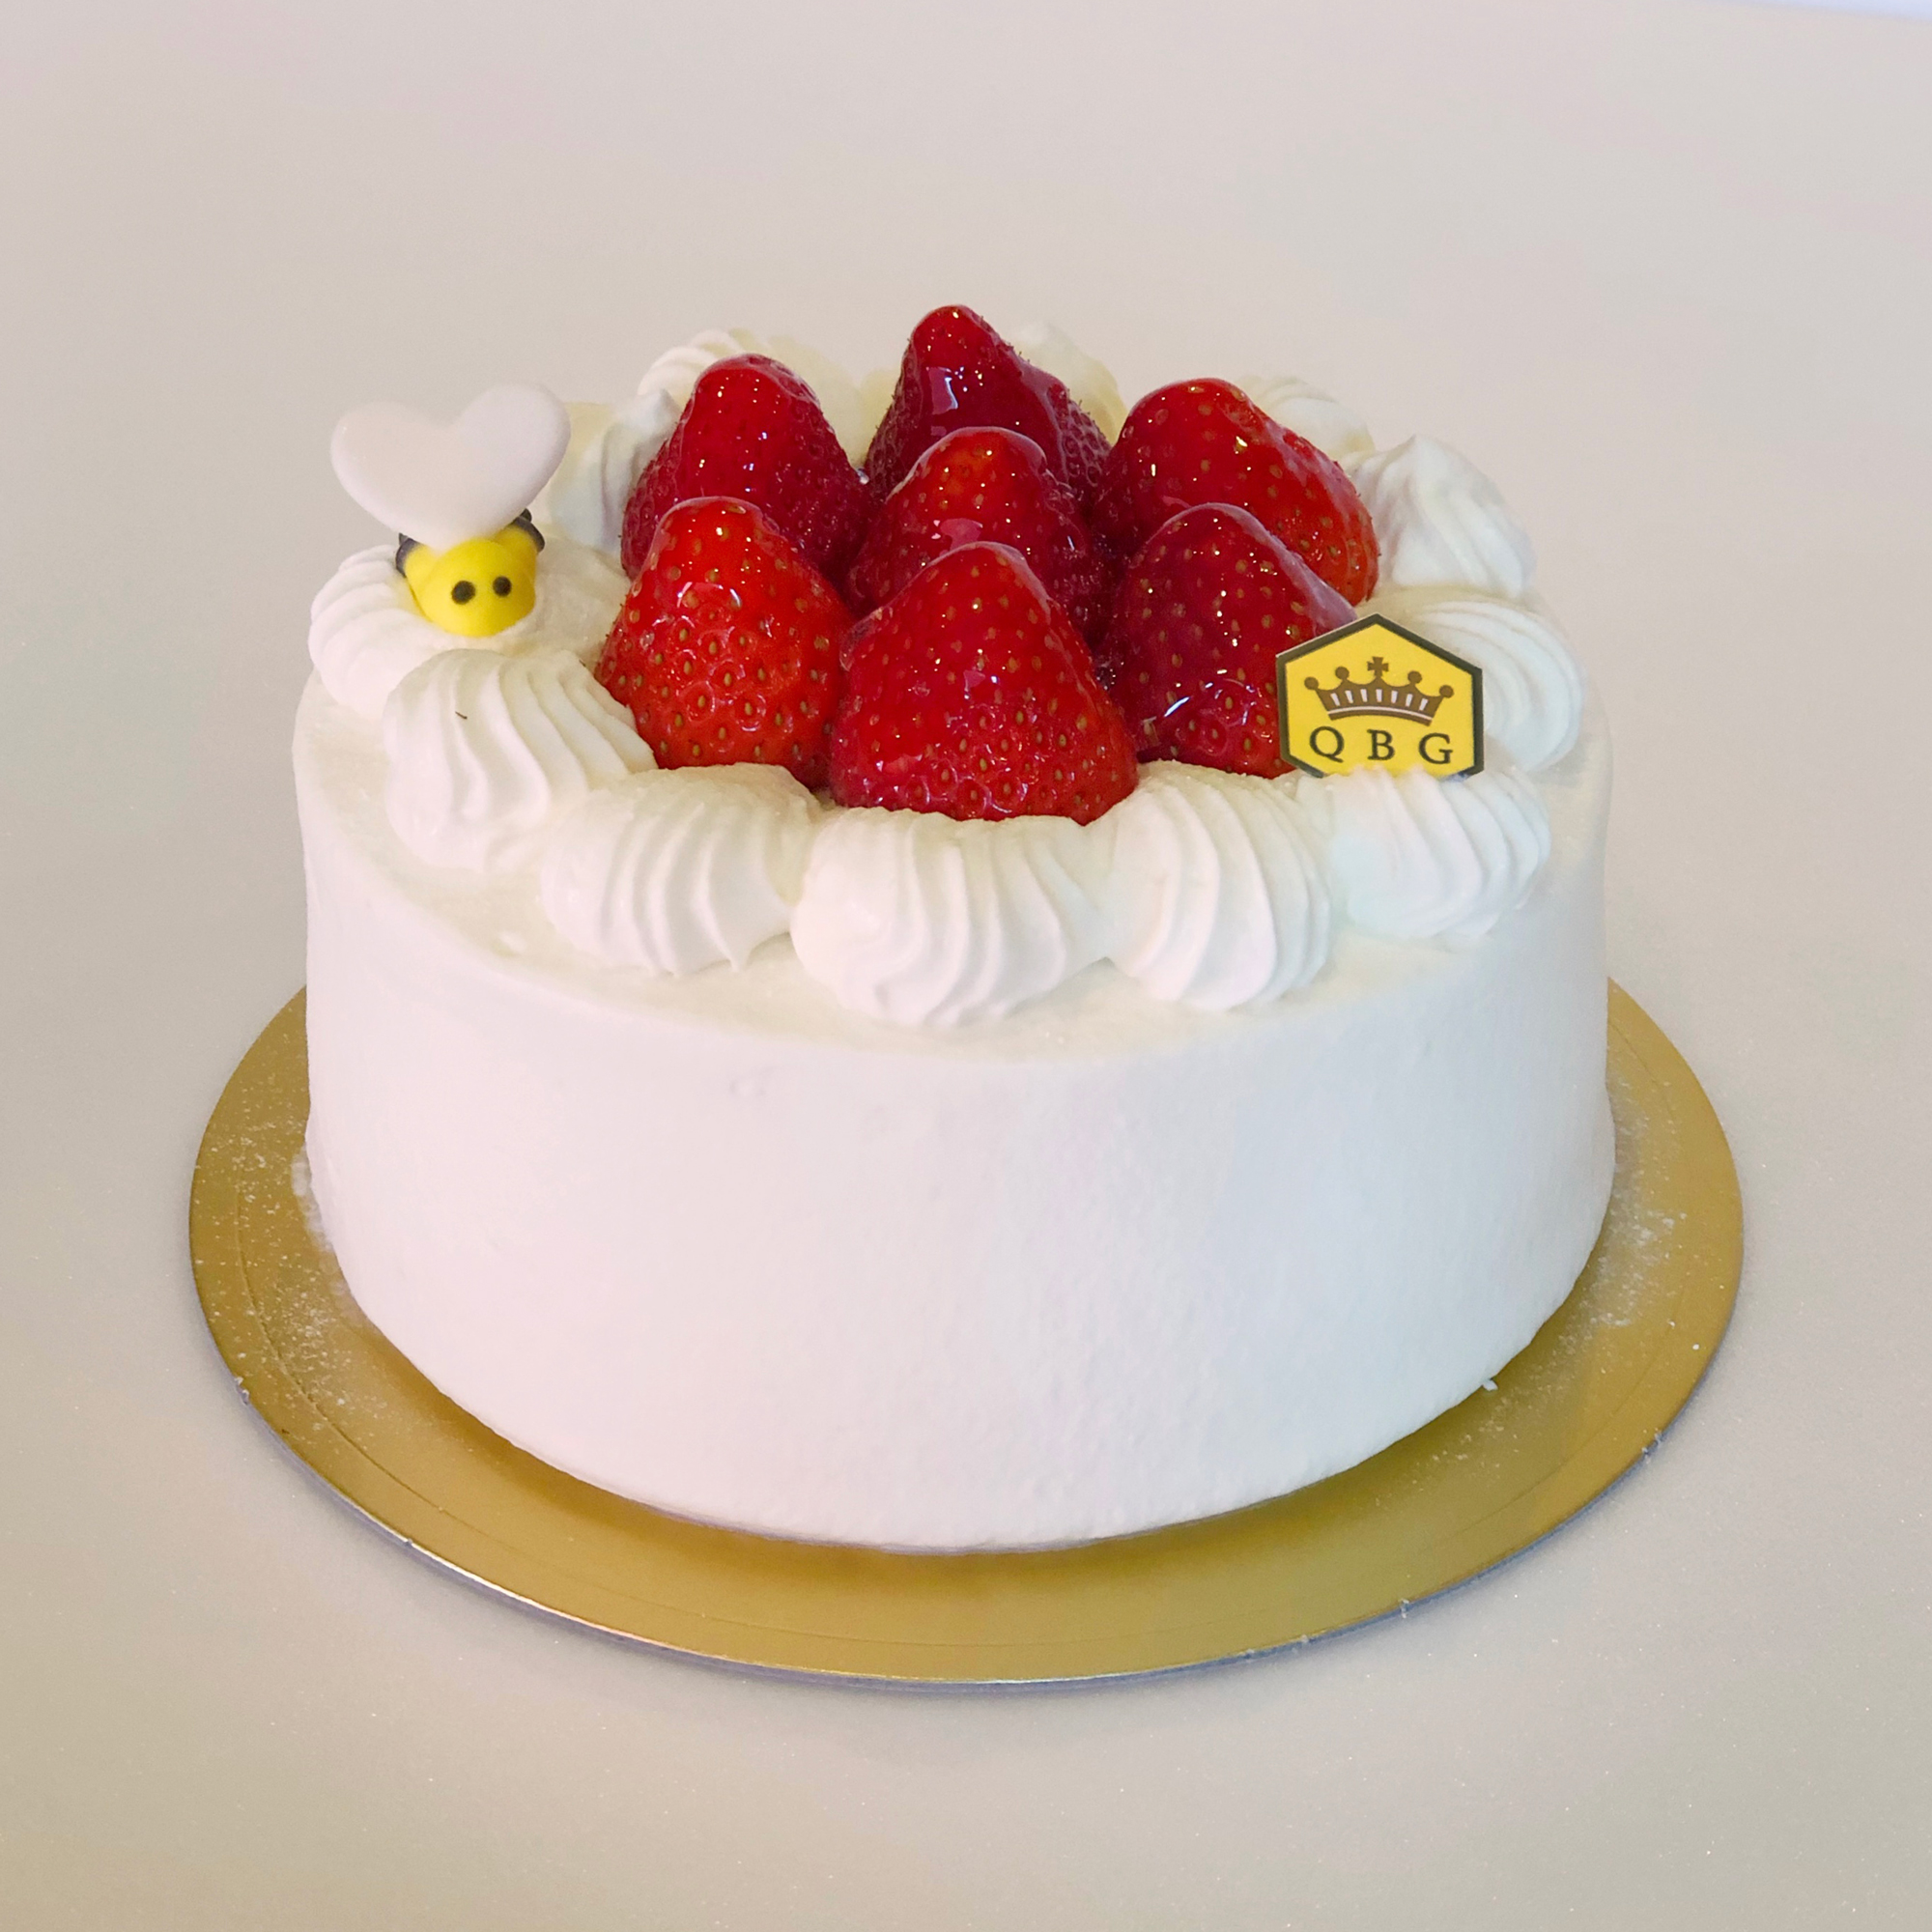 イデミスギノ ホール ケーキ